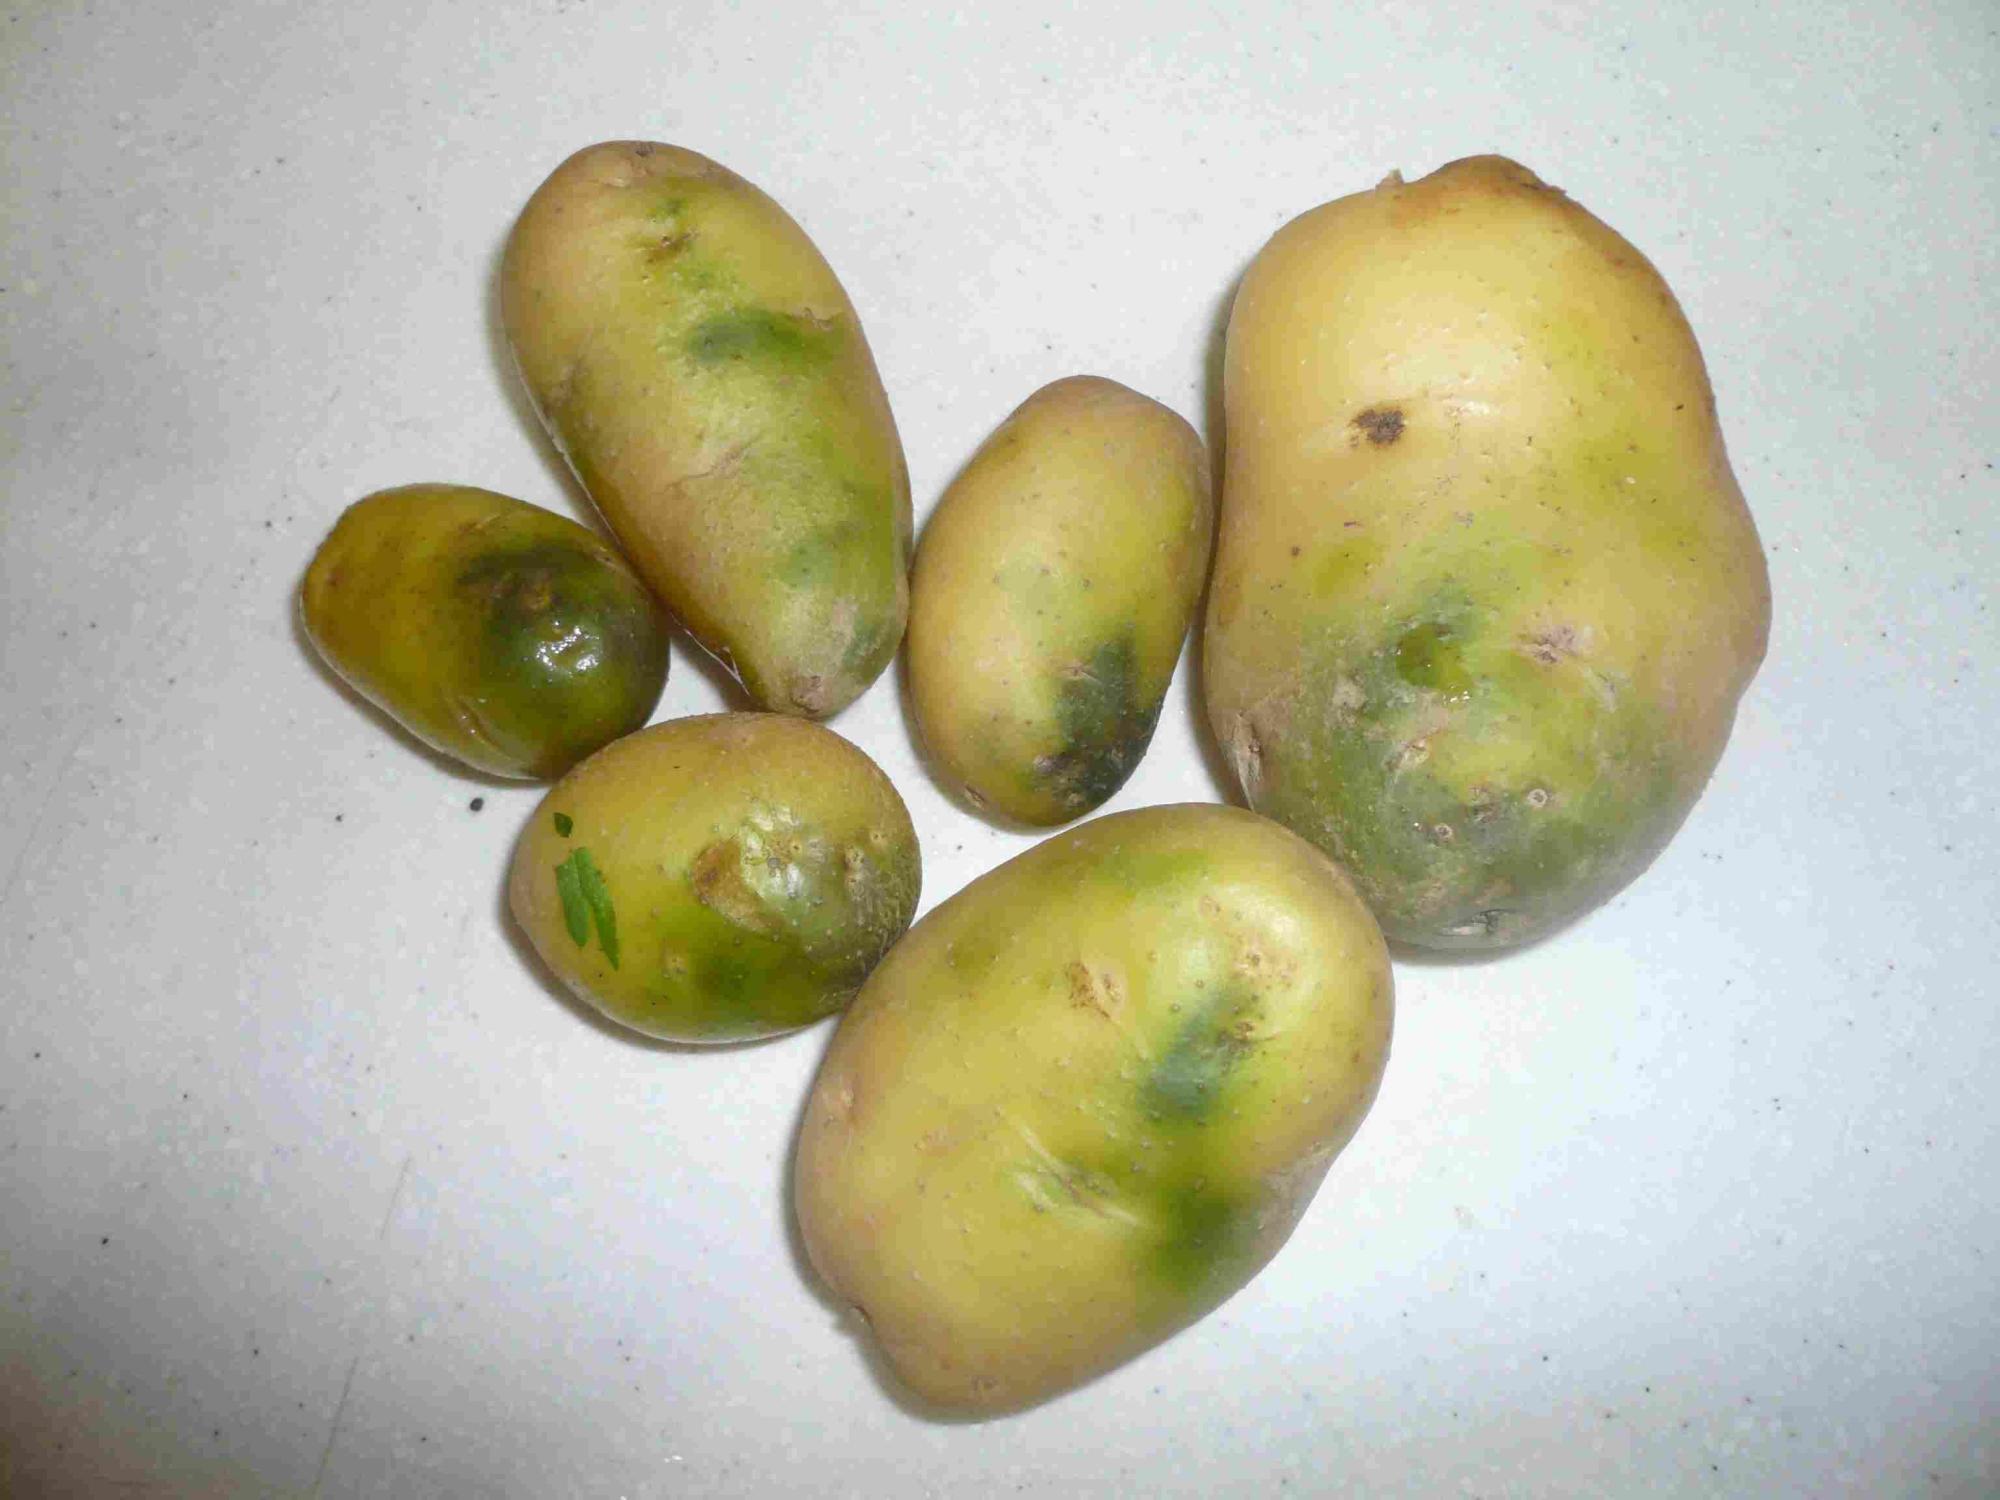 土豆变色过程图片图片